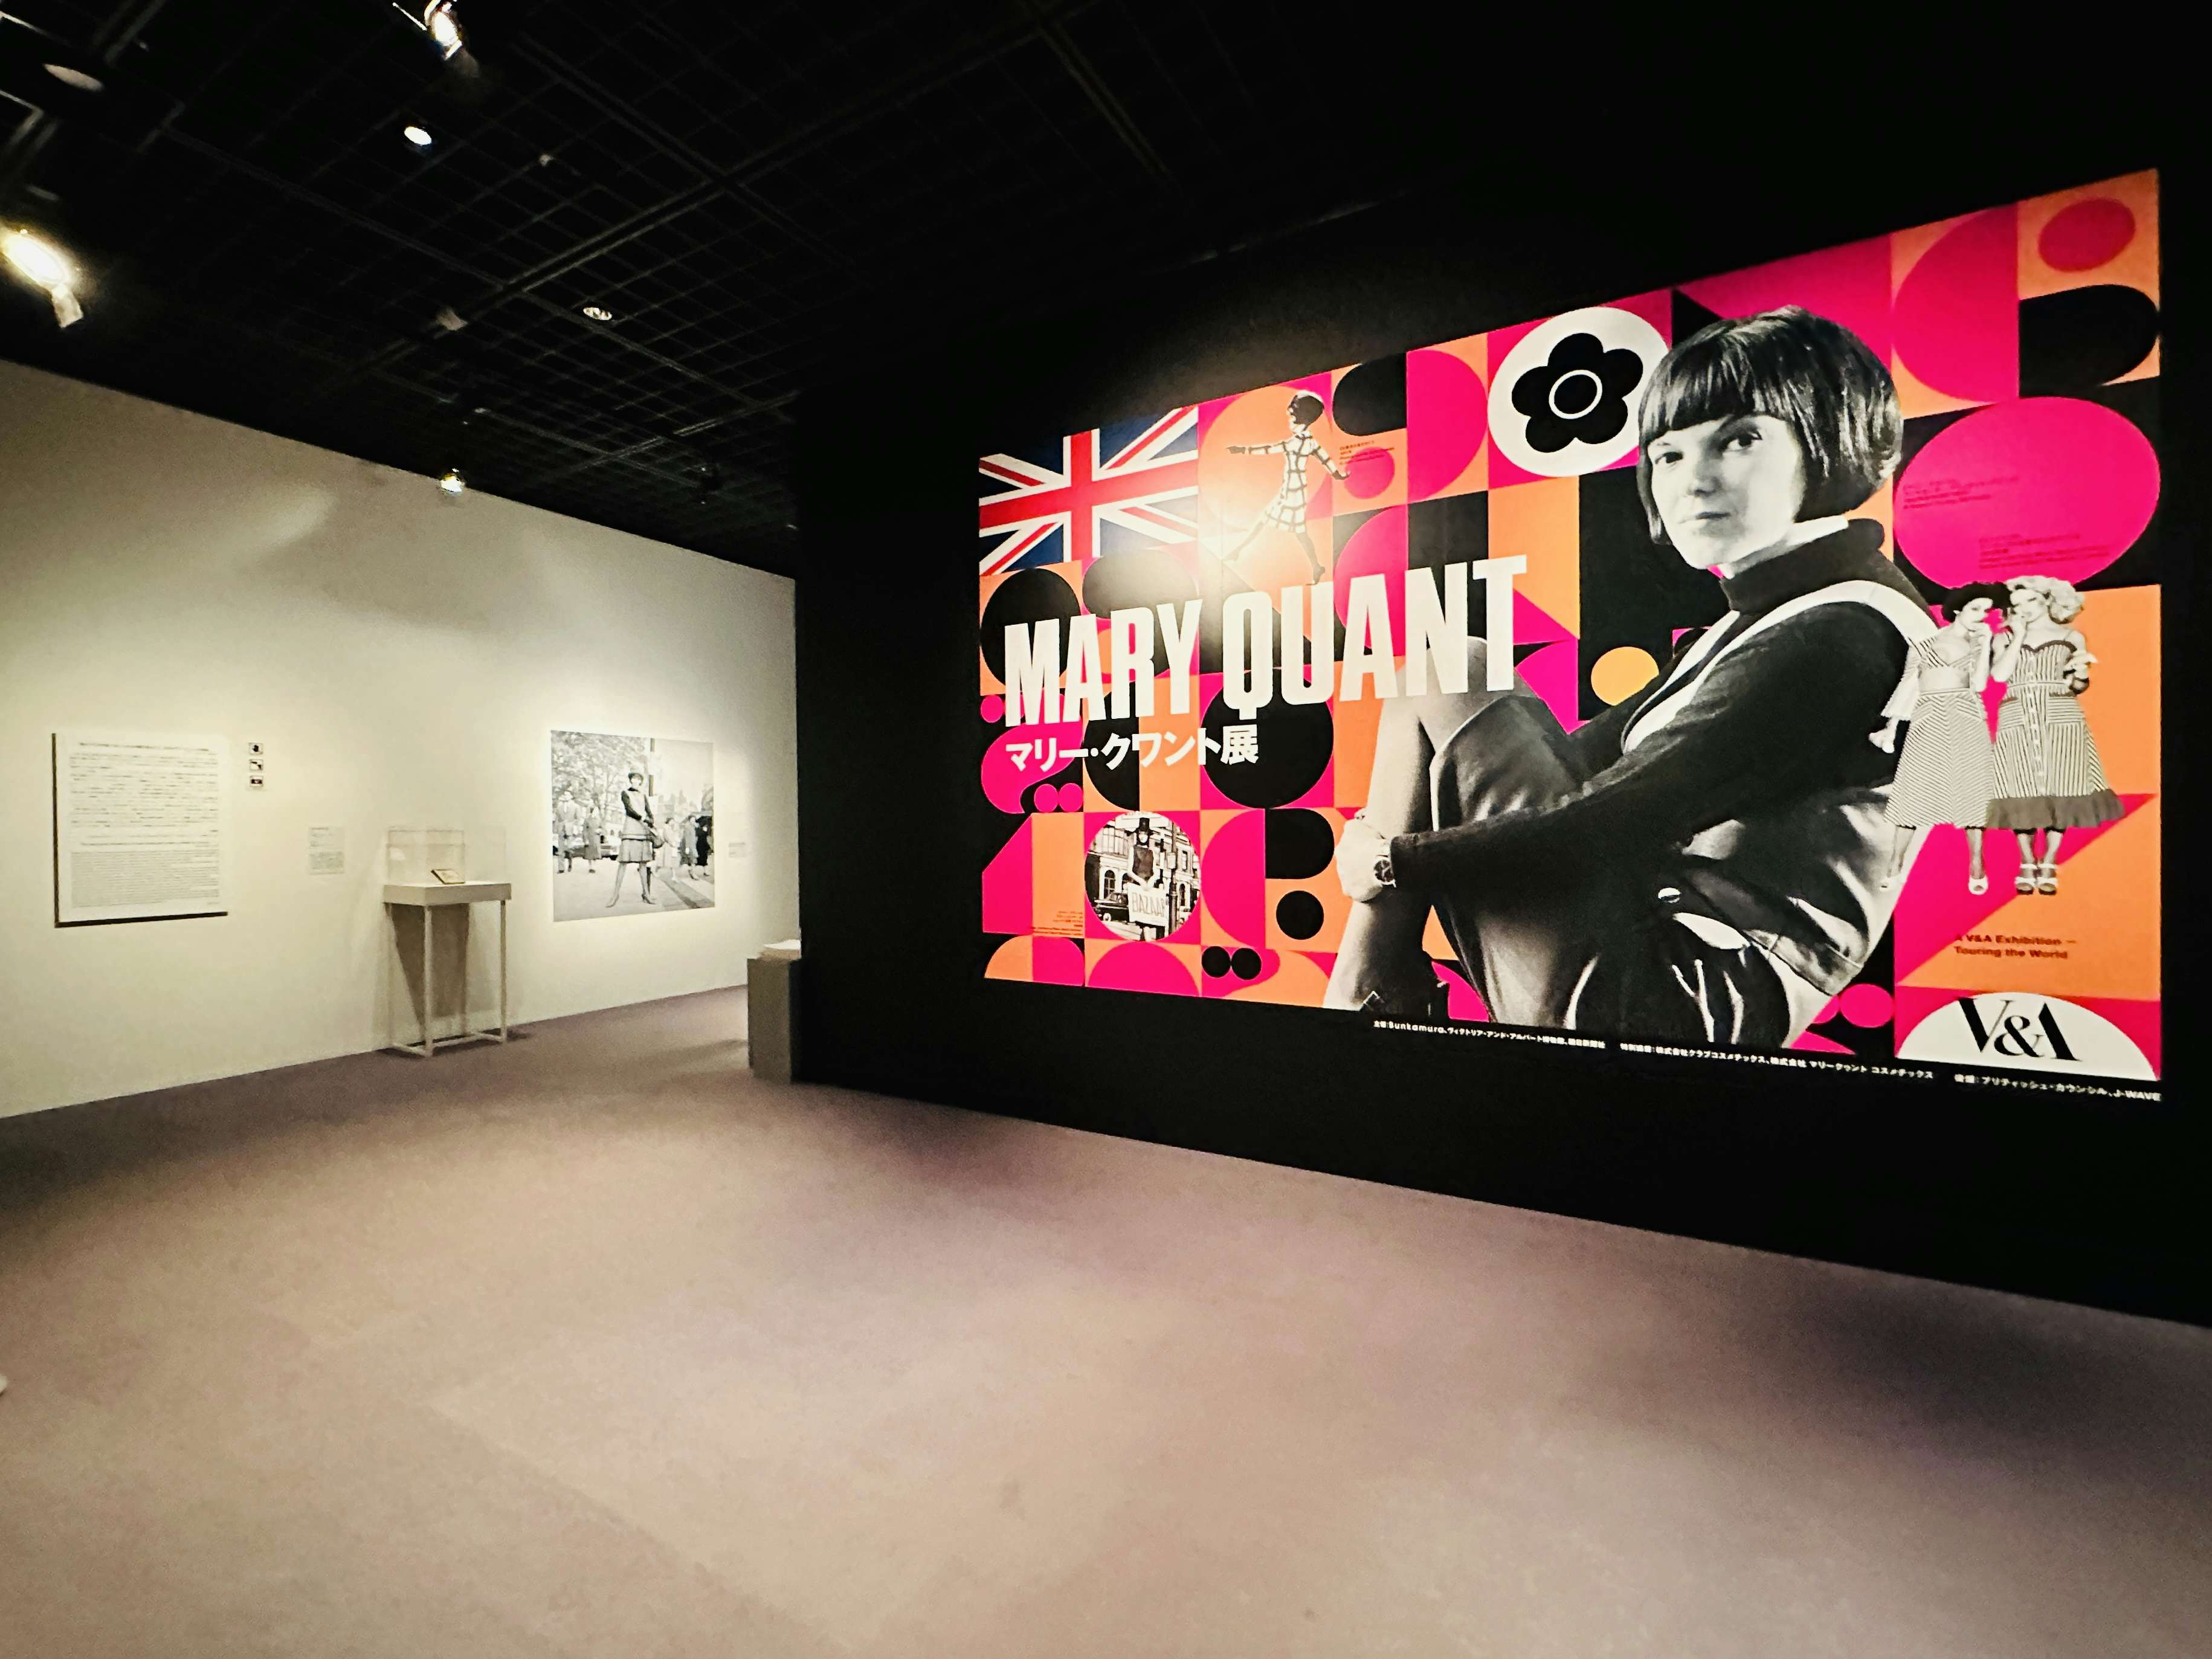 ミニの女王、マリー・クワント。日本初の回顧展でたどるその軌跡